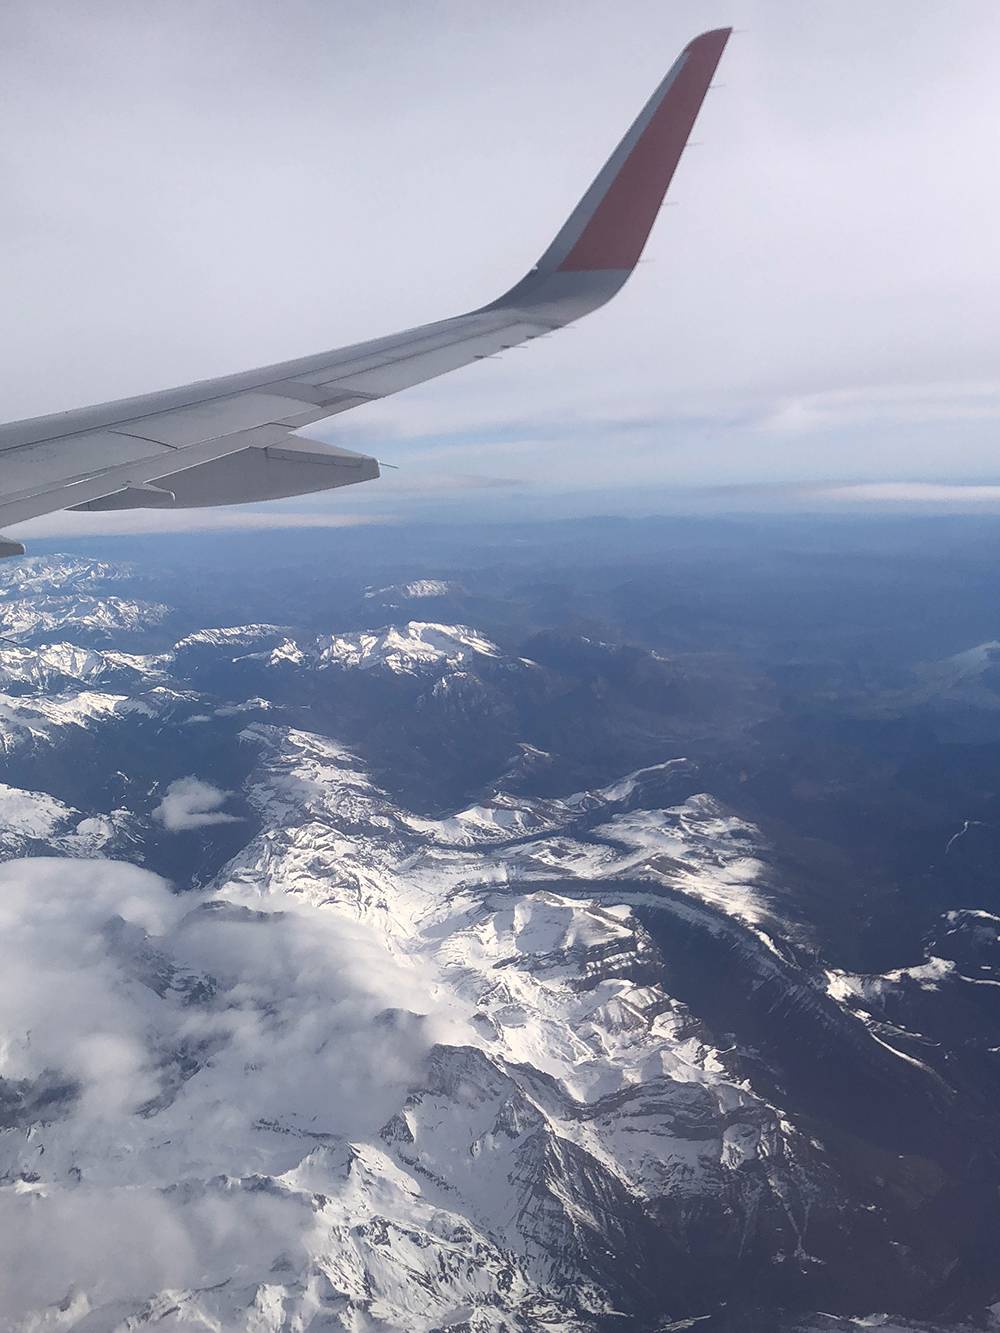 Таким видом на Пиренеи, красивым и величественным, провожала меня Испания в московскую зиму. Интересно, что самолет летел над&nbsp;Наваррой и теми местами, где я была на экскурсии, — кажется, я даже видела местные каньоны